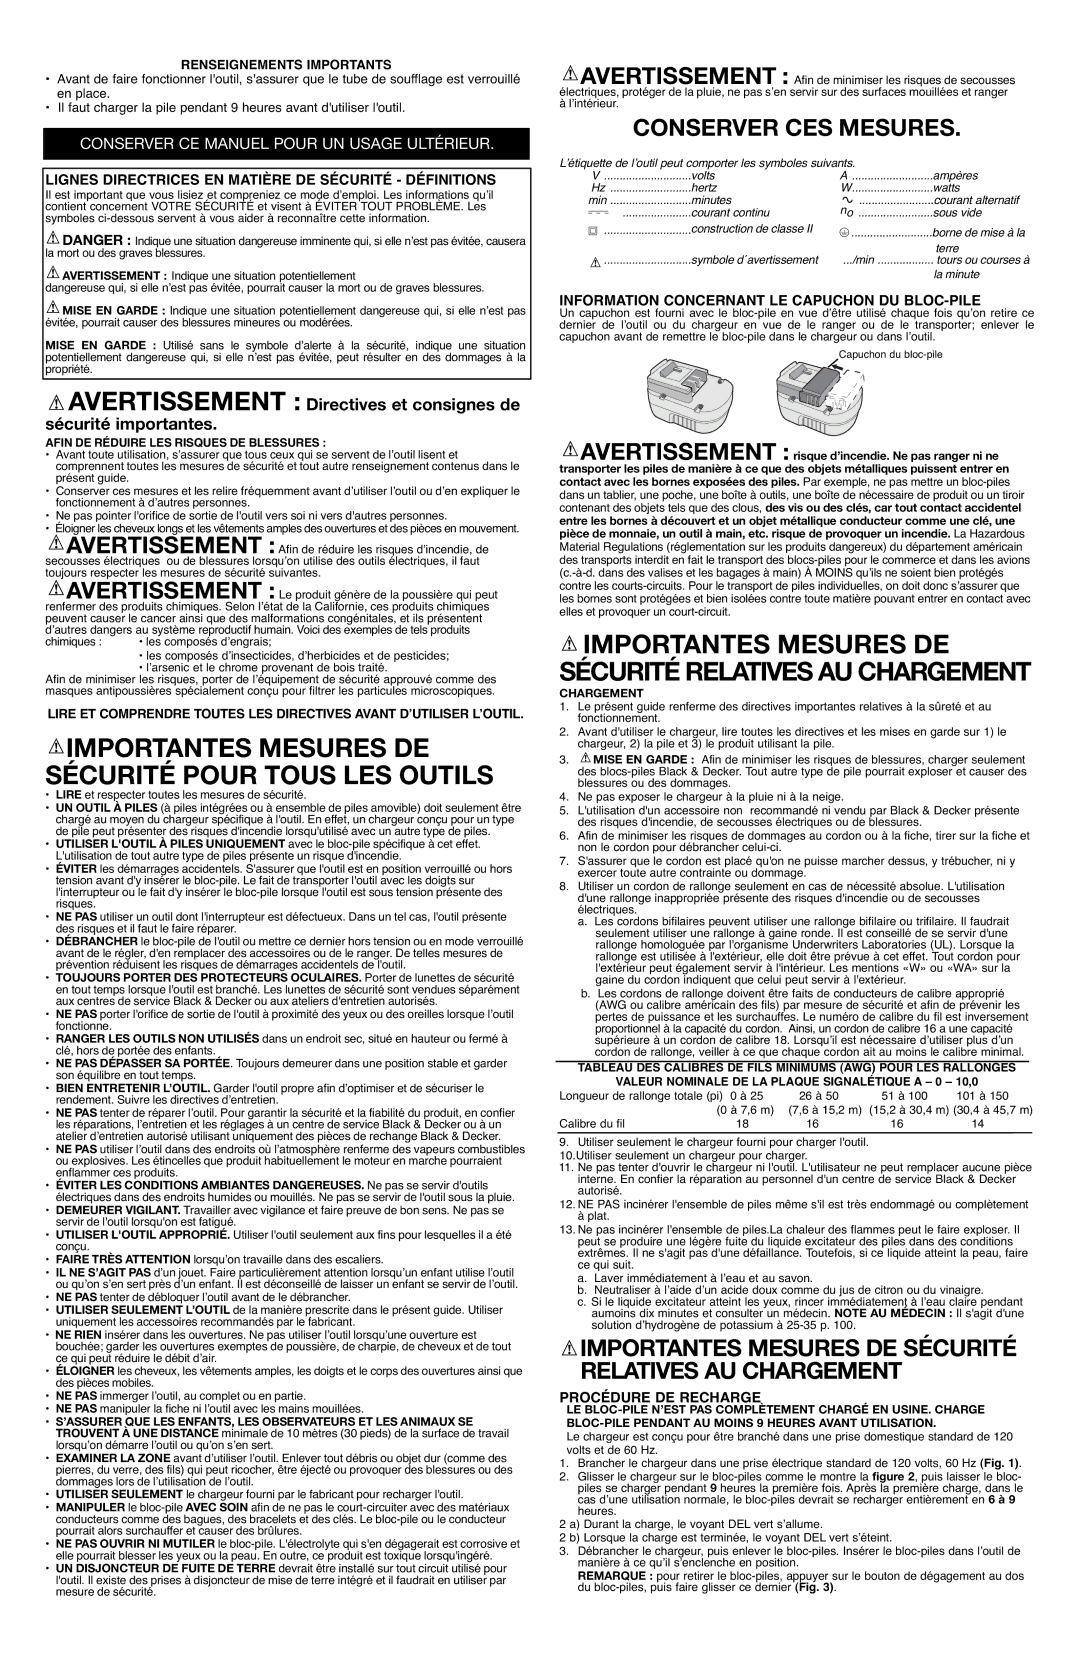 Black & Decker NS118L instruction manual Conserver CES Mesures, Importantes Mesures DE Sécurité Relatives AU Chargement 